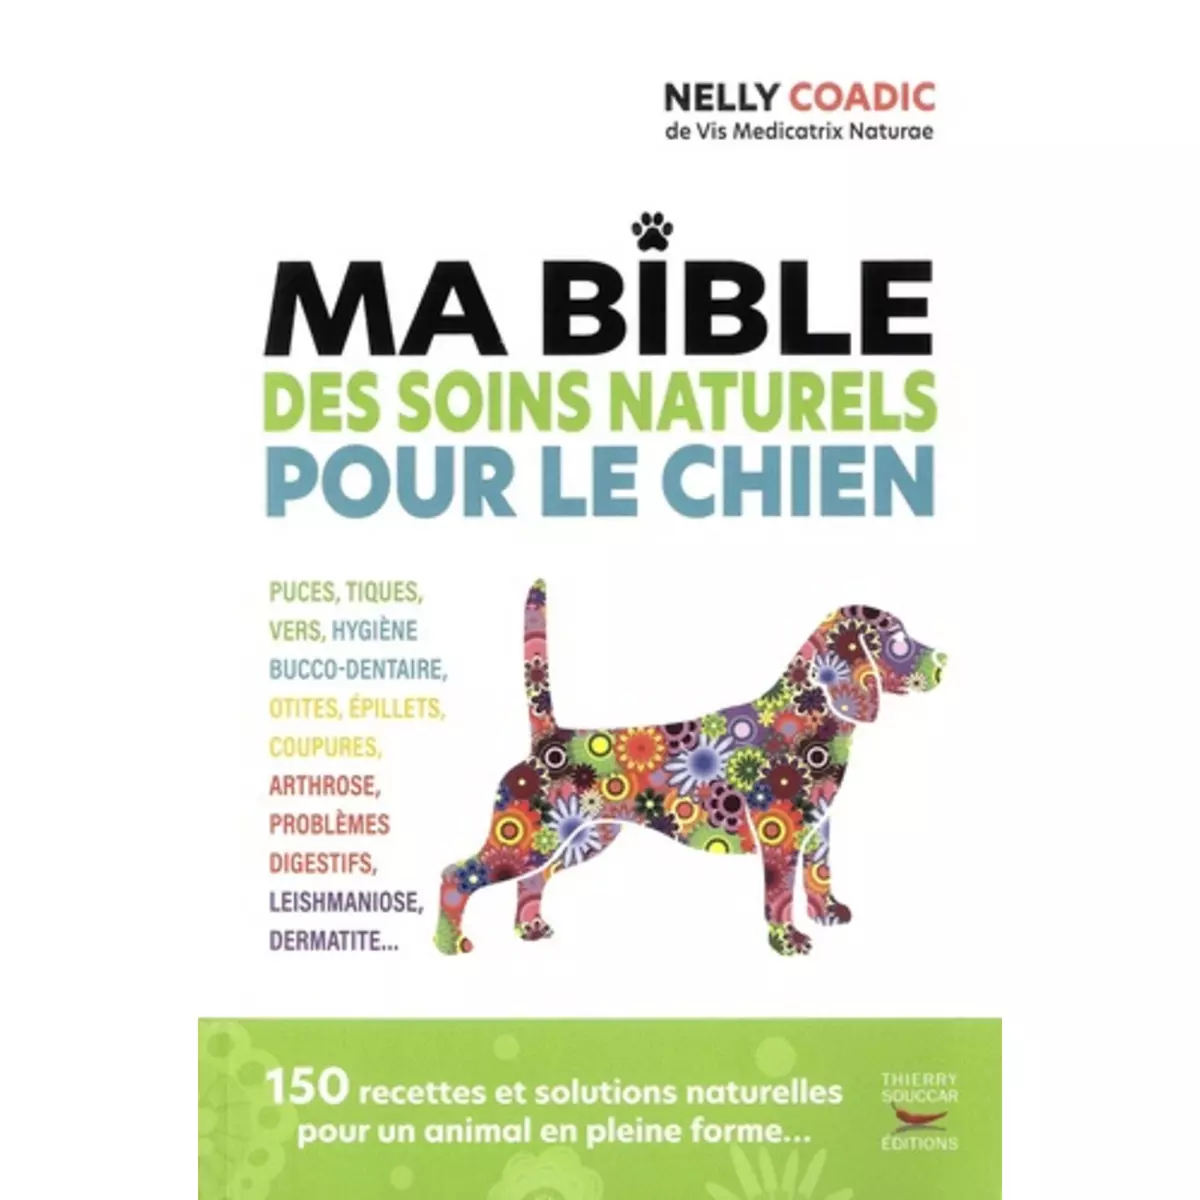  MA BIBLE DES SOINS NATURELS POUR LE CHIEN, Coadic Nelly